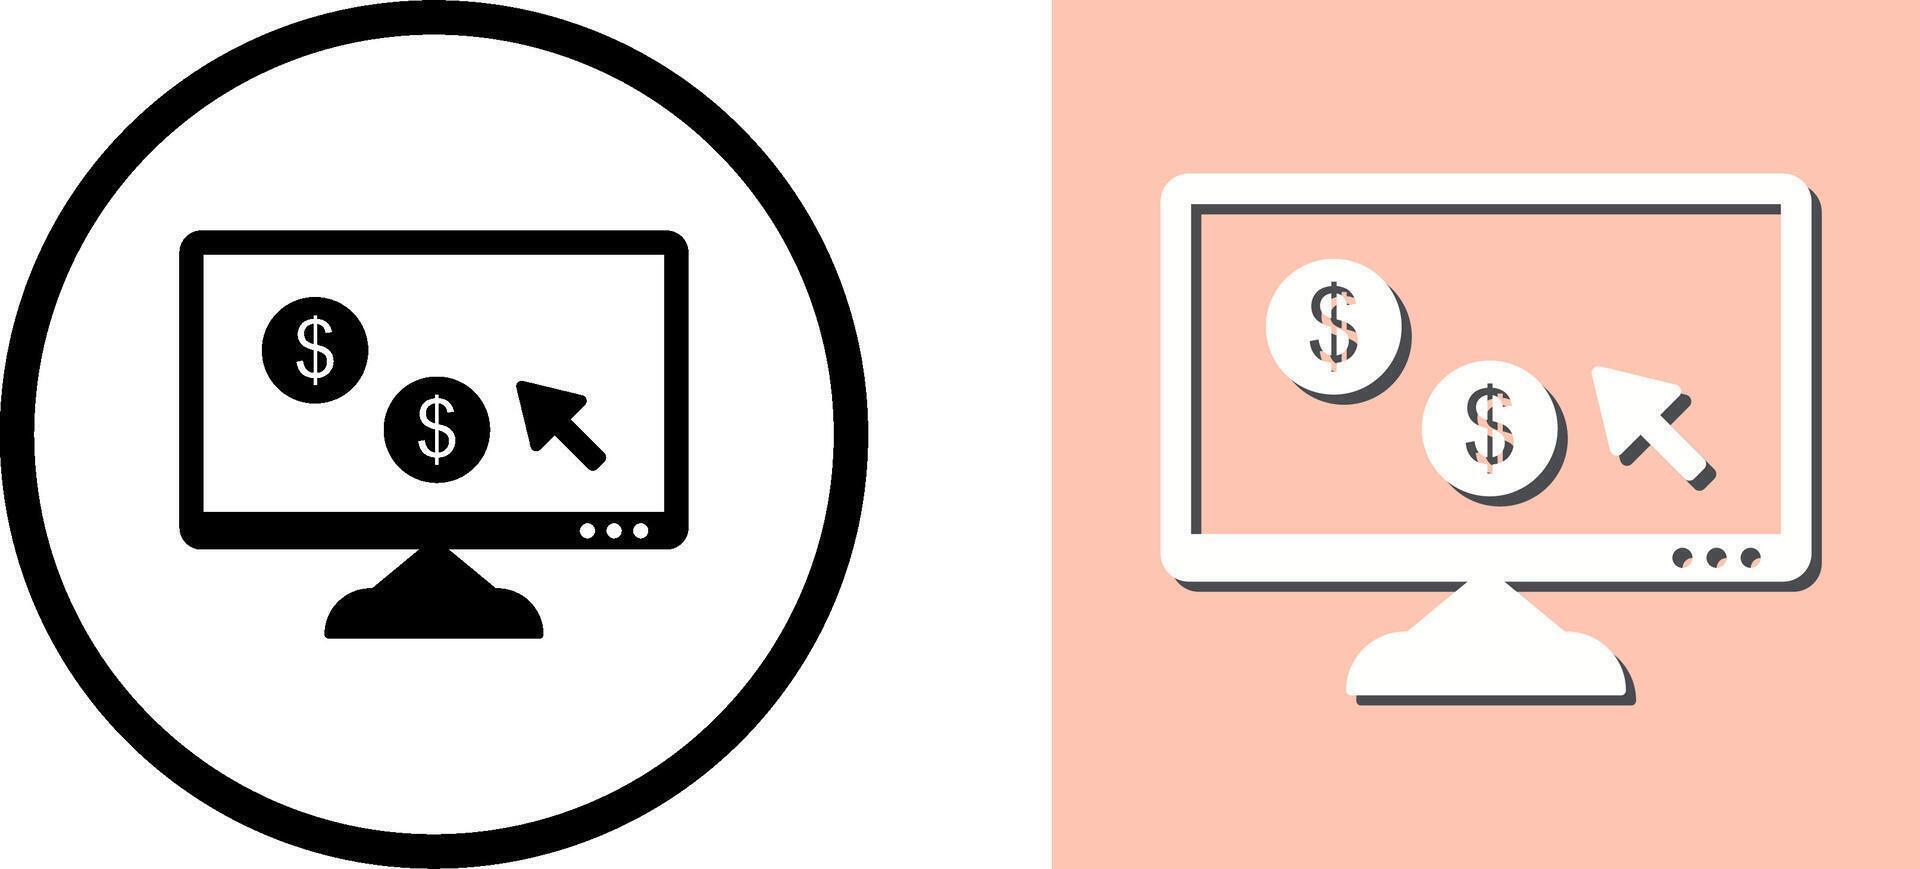 Unique Pay Per Click Icon Design vector